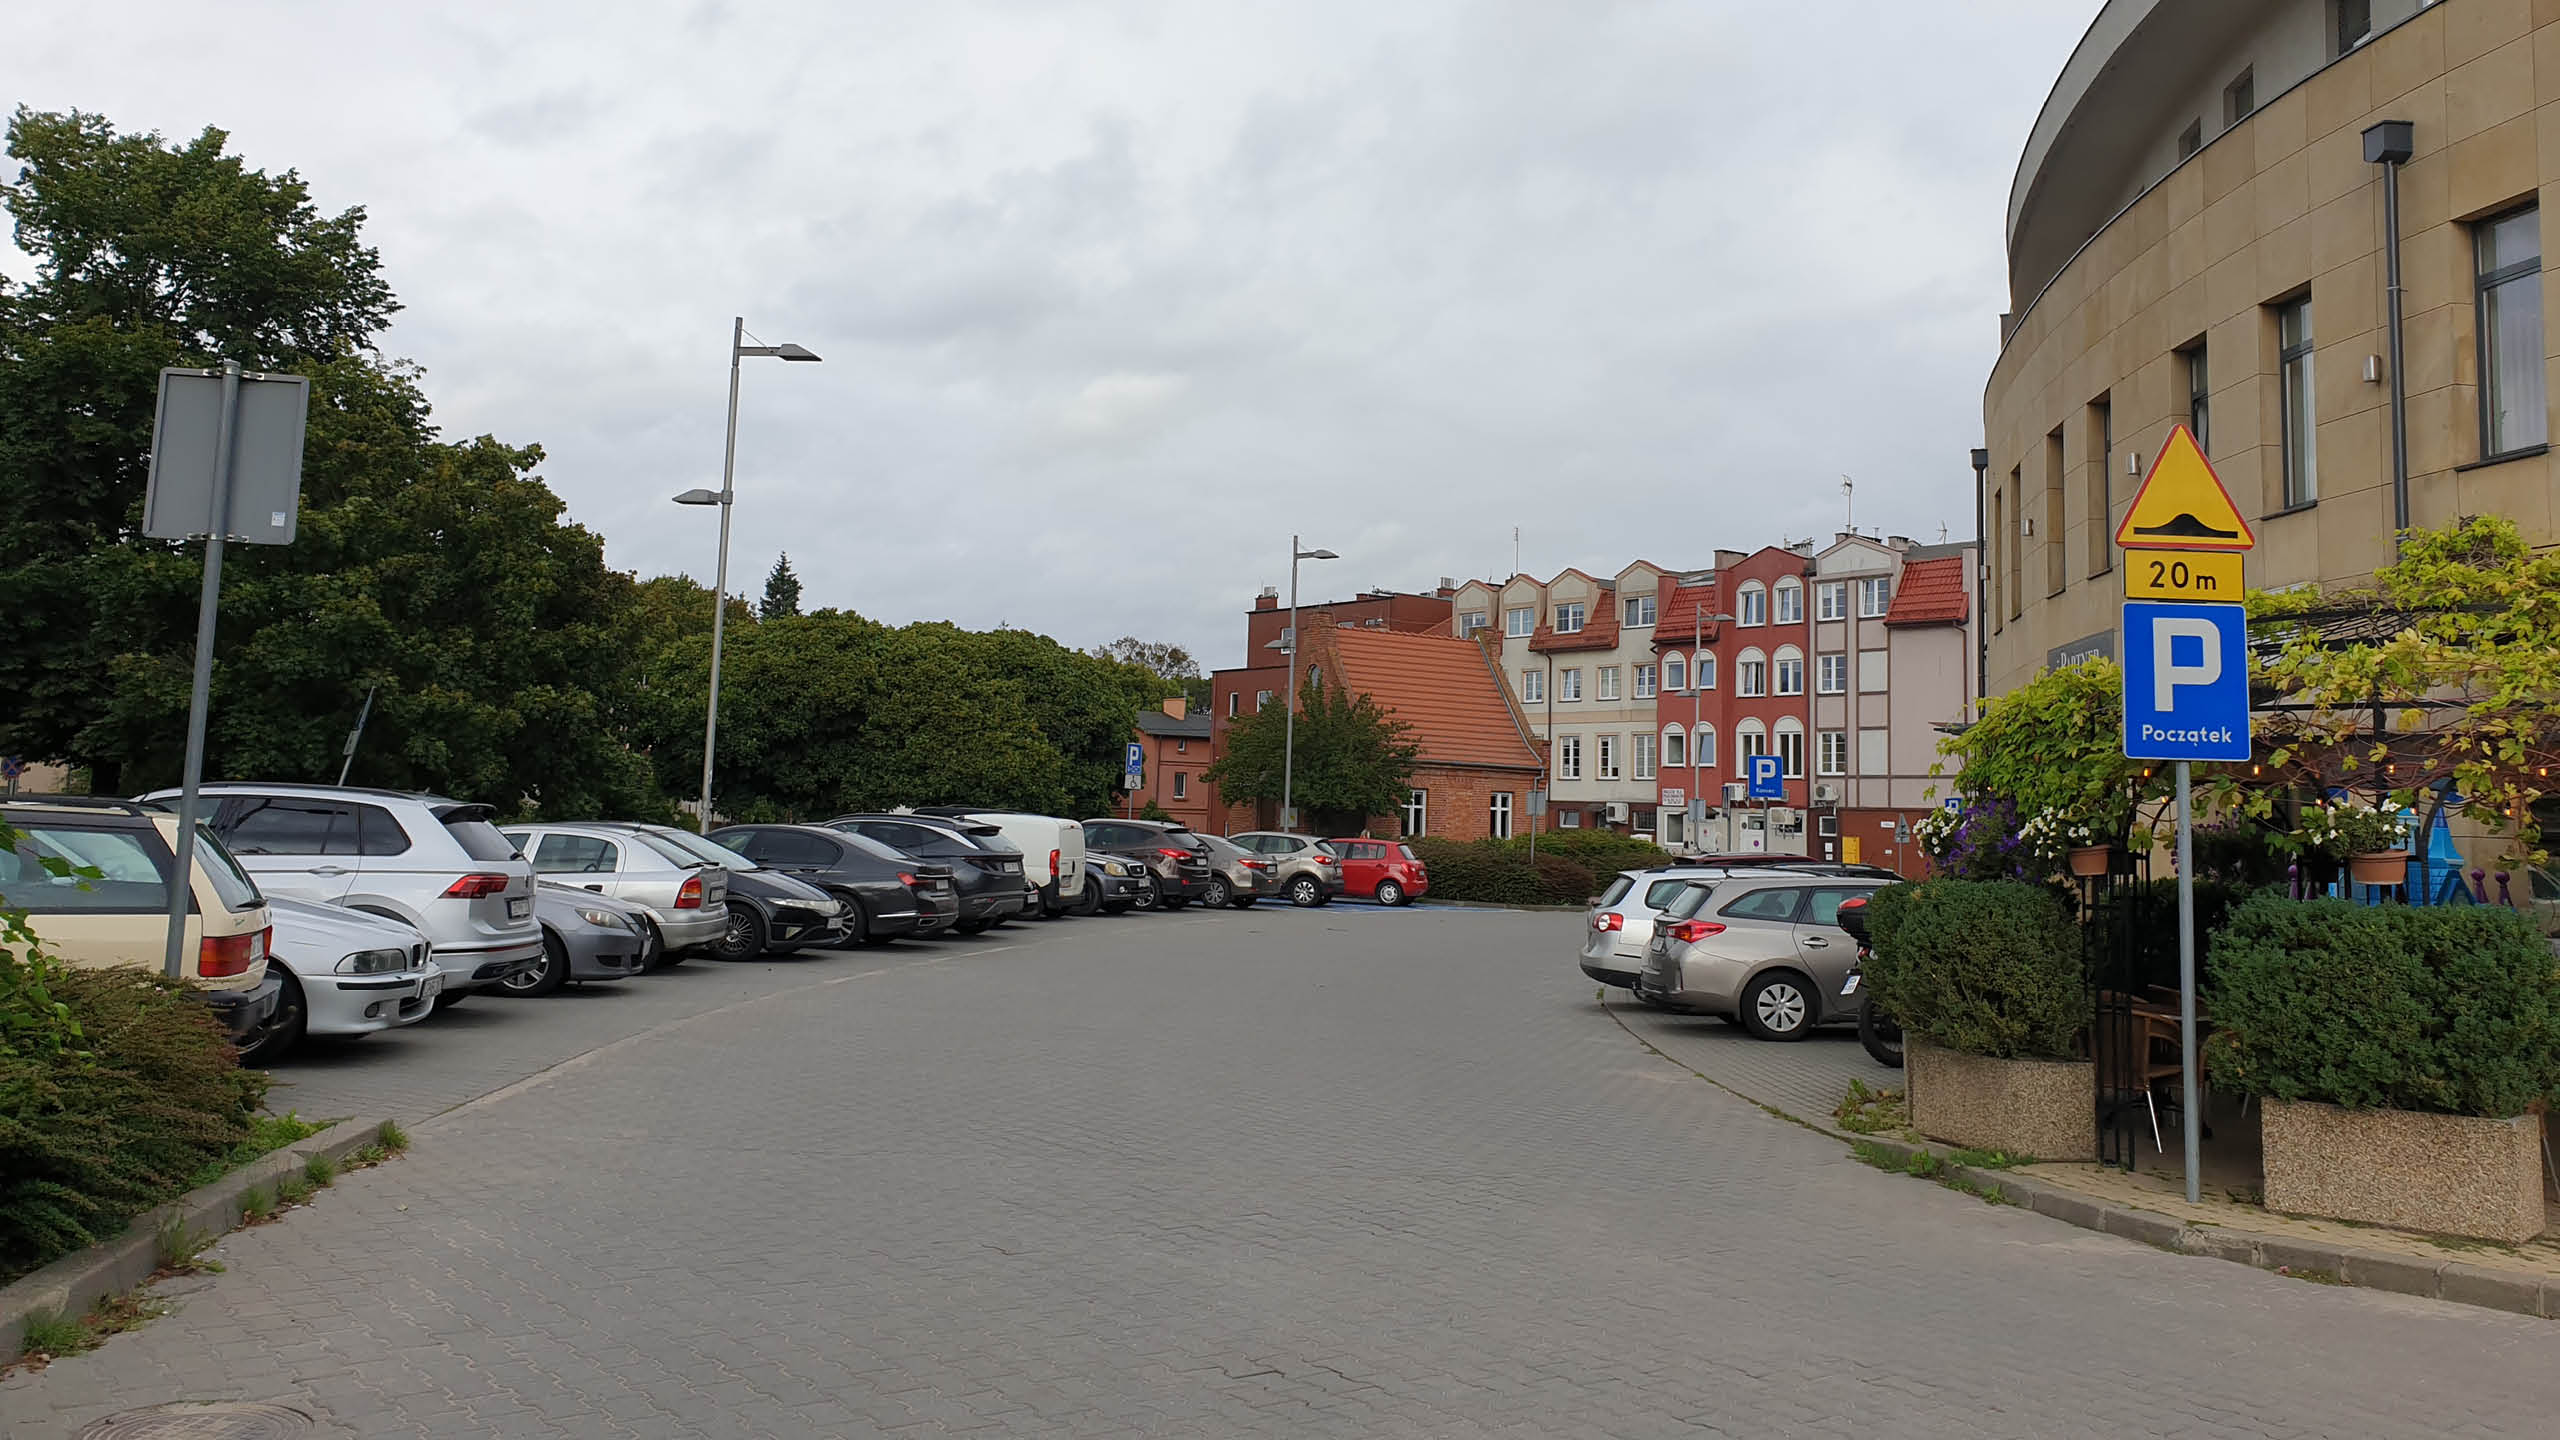 Podpisano umowę na dostawę wraz z montażem opraw oświetleniowych na terenie miasta Pruszcz Gdański – część 6.